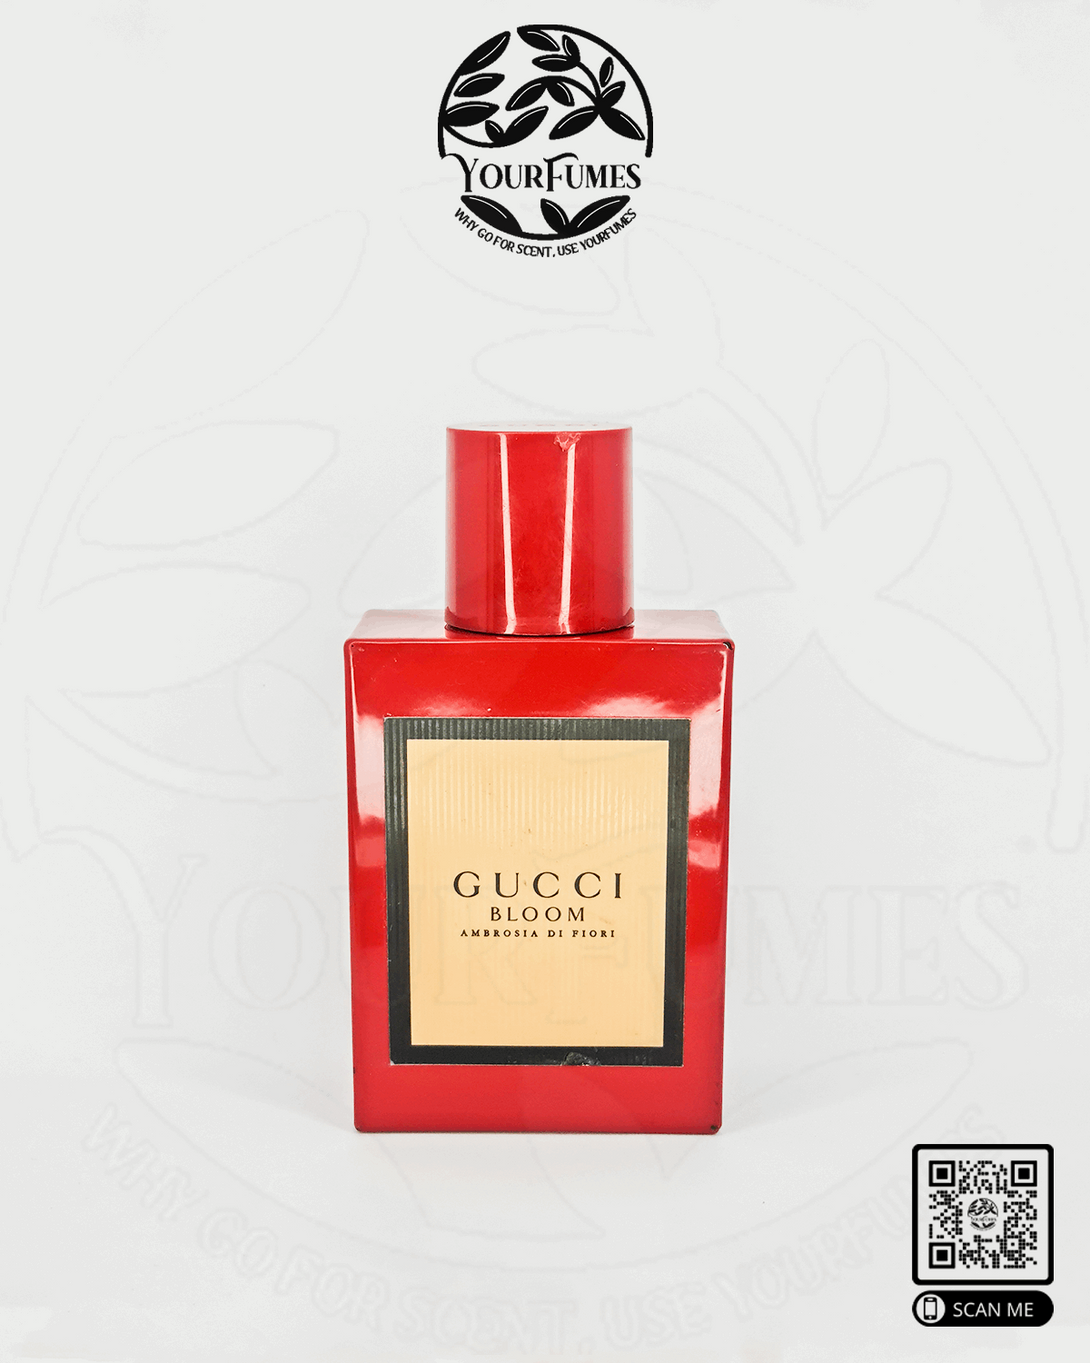 Gucci Bloom Ambrosia di Fiori - Yourfumes